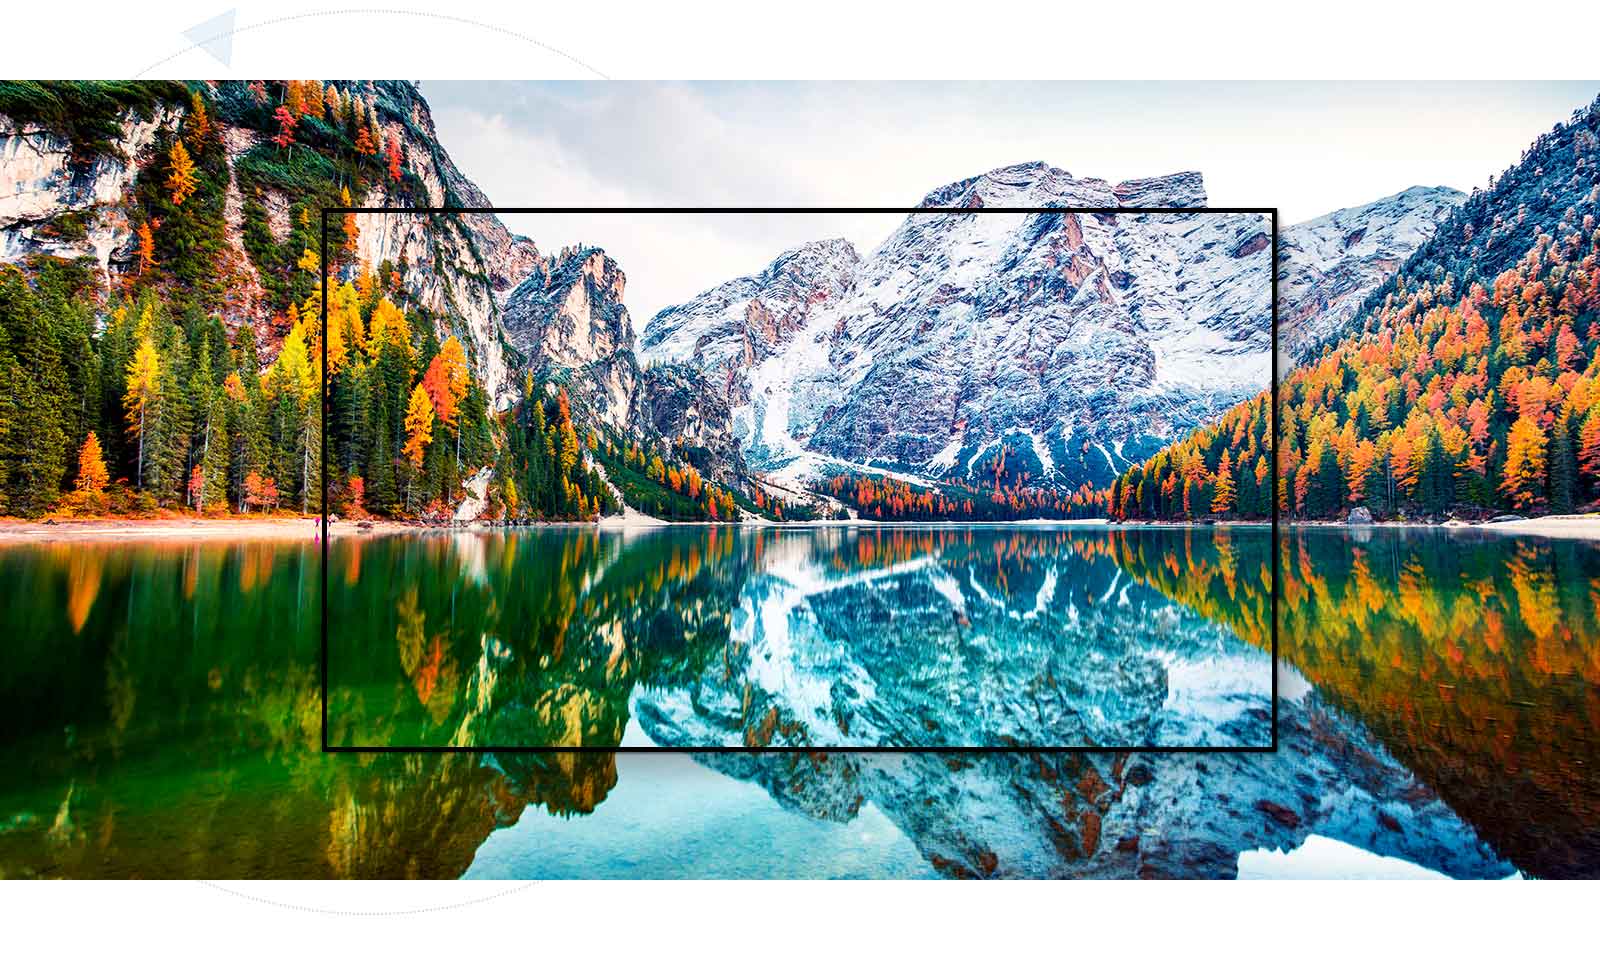 شاشة تلفزيون تعرض منظرًا طبيعيًا للجبال مع إطلالة مكبرة على البحيرة (تشغيل فيديو)